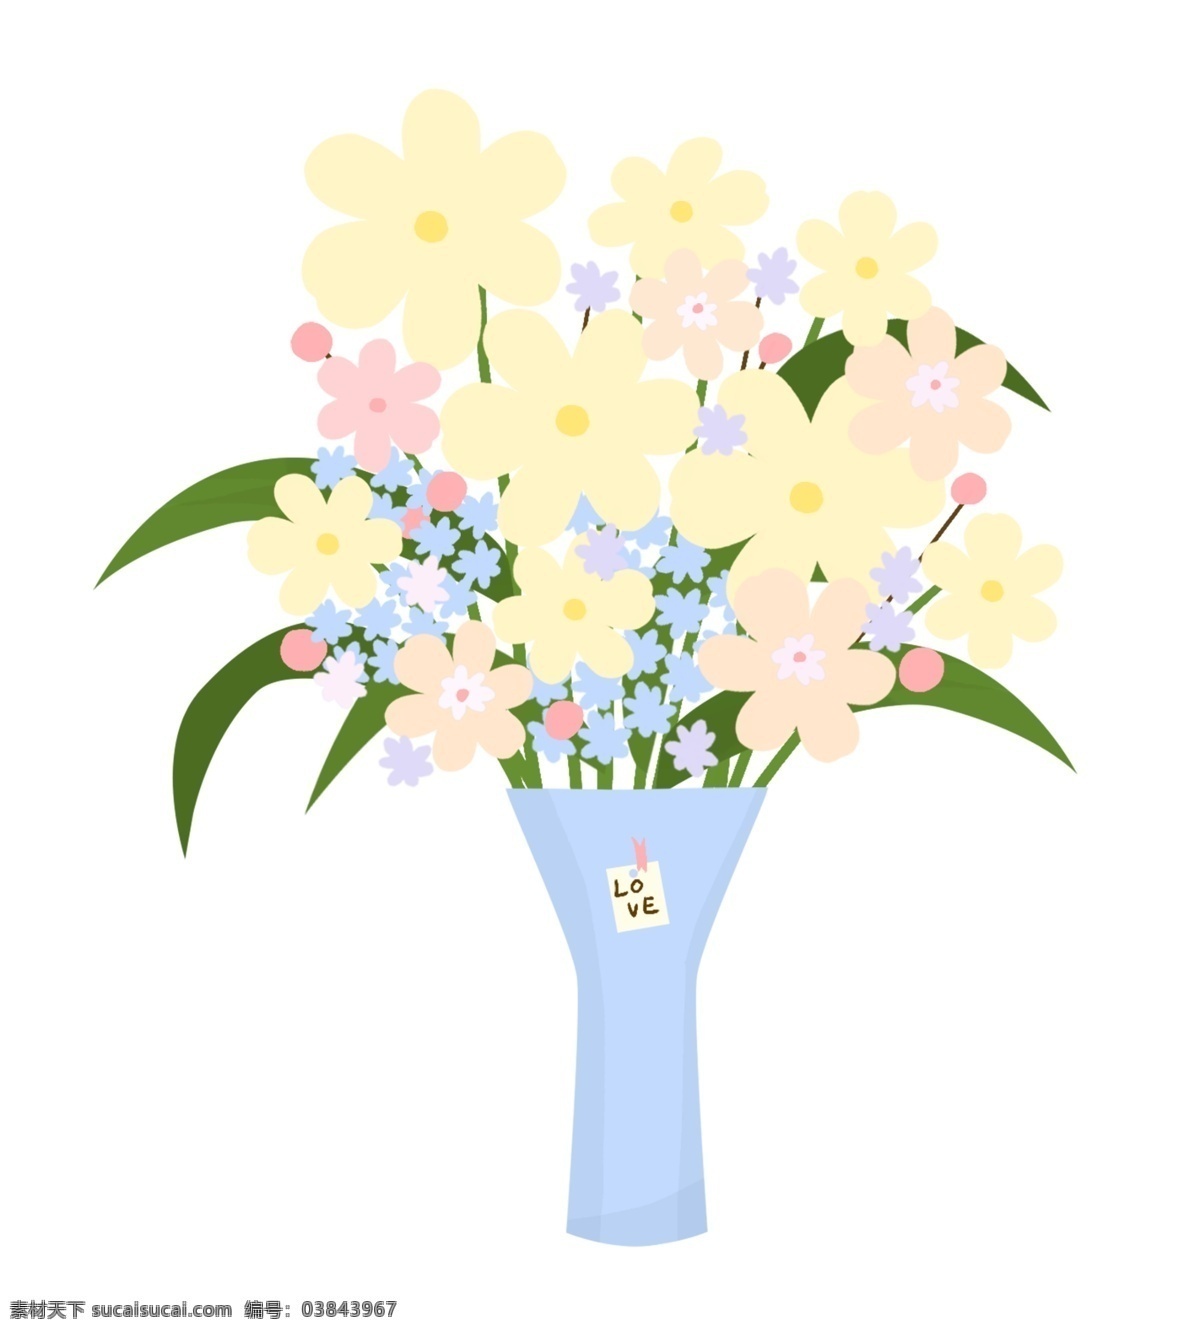 手绘 花艺 花束 插画 手绘黄色花朵 蓝色花瓶 绿色叶子花束 手绘鲜花花束 鲜花花艺花束 花瓶鲜花插画